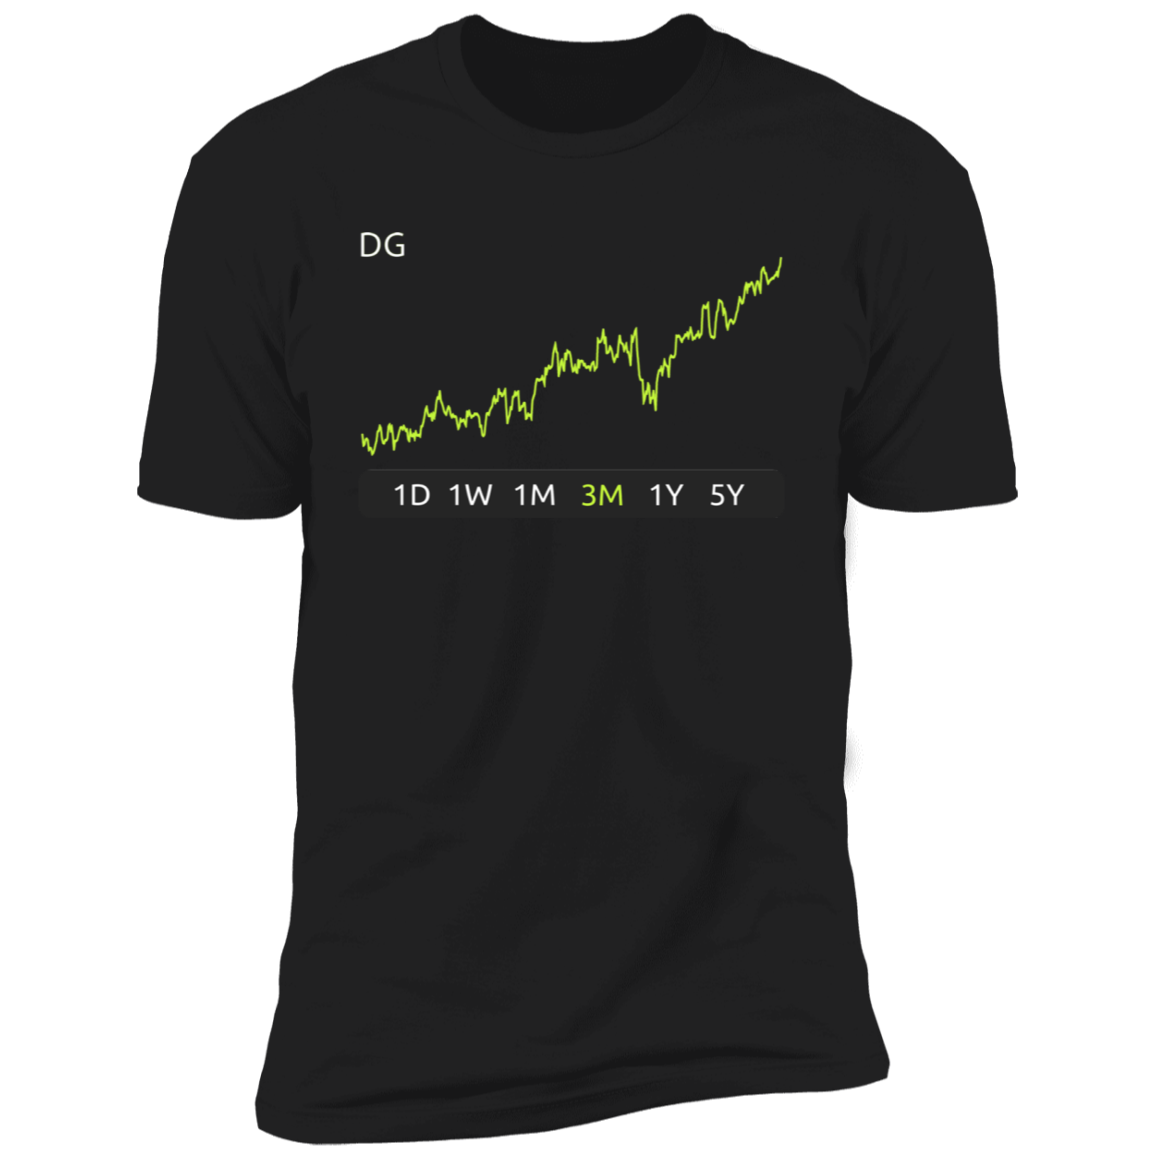 DG Stock 3m Premium T-Shirt